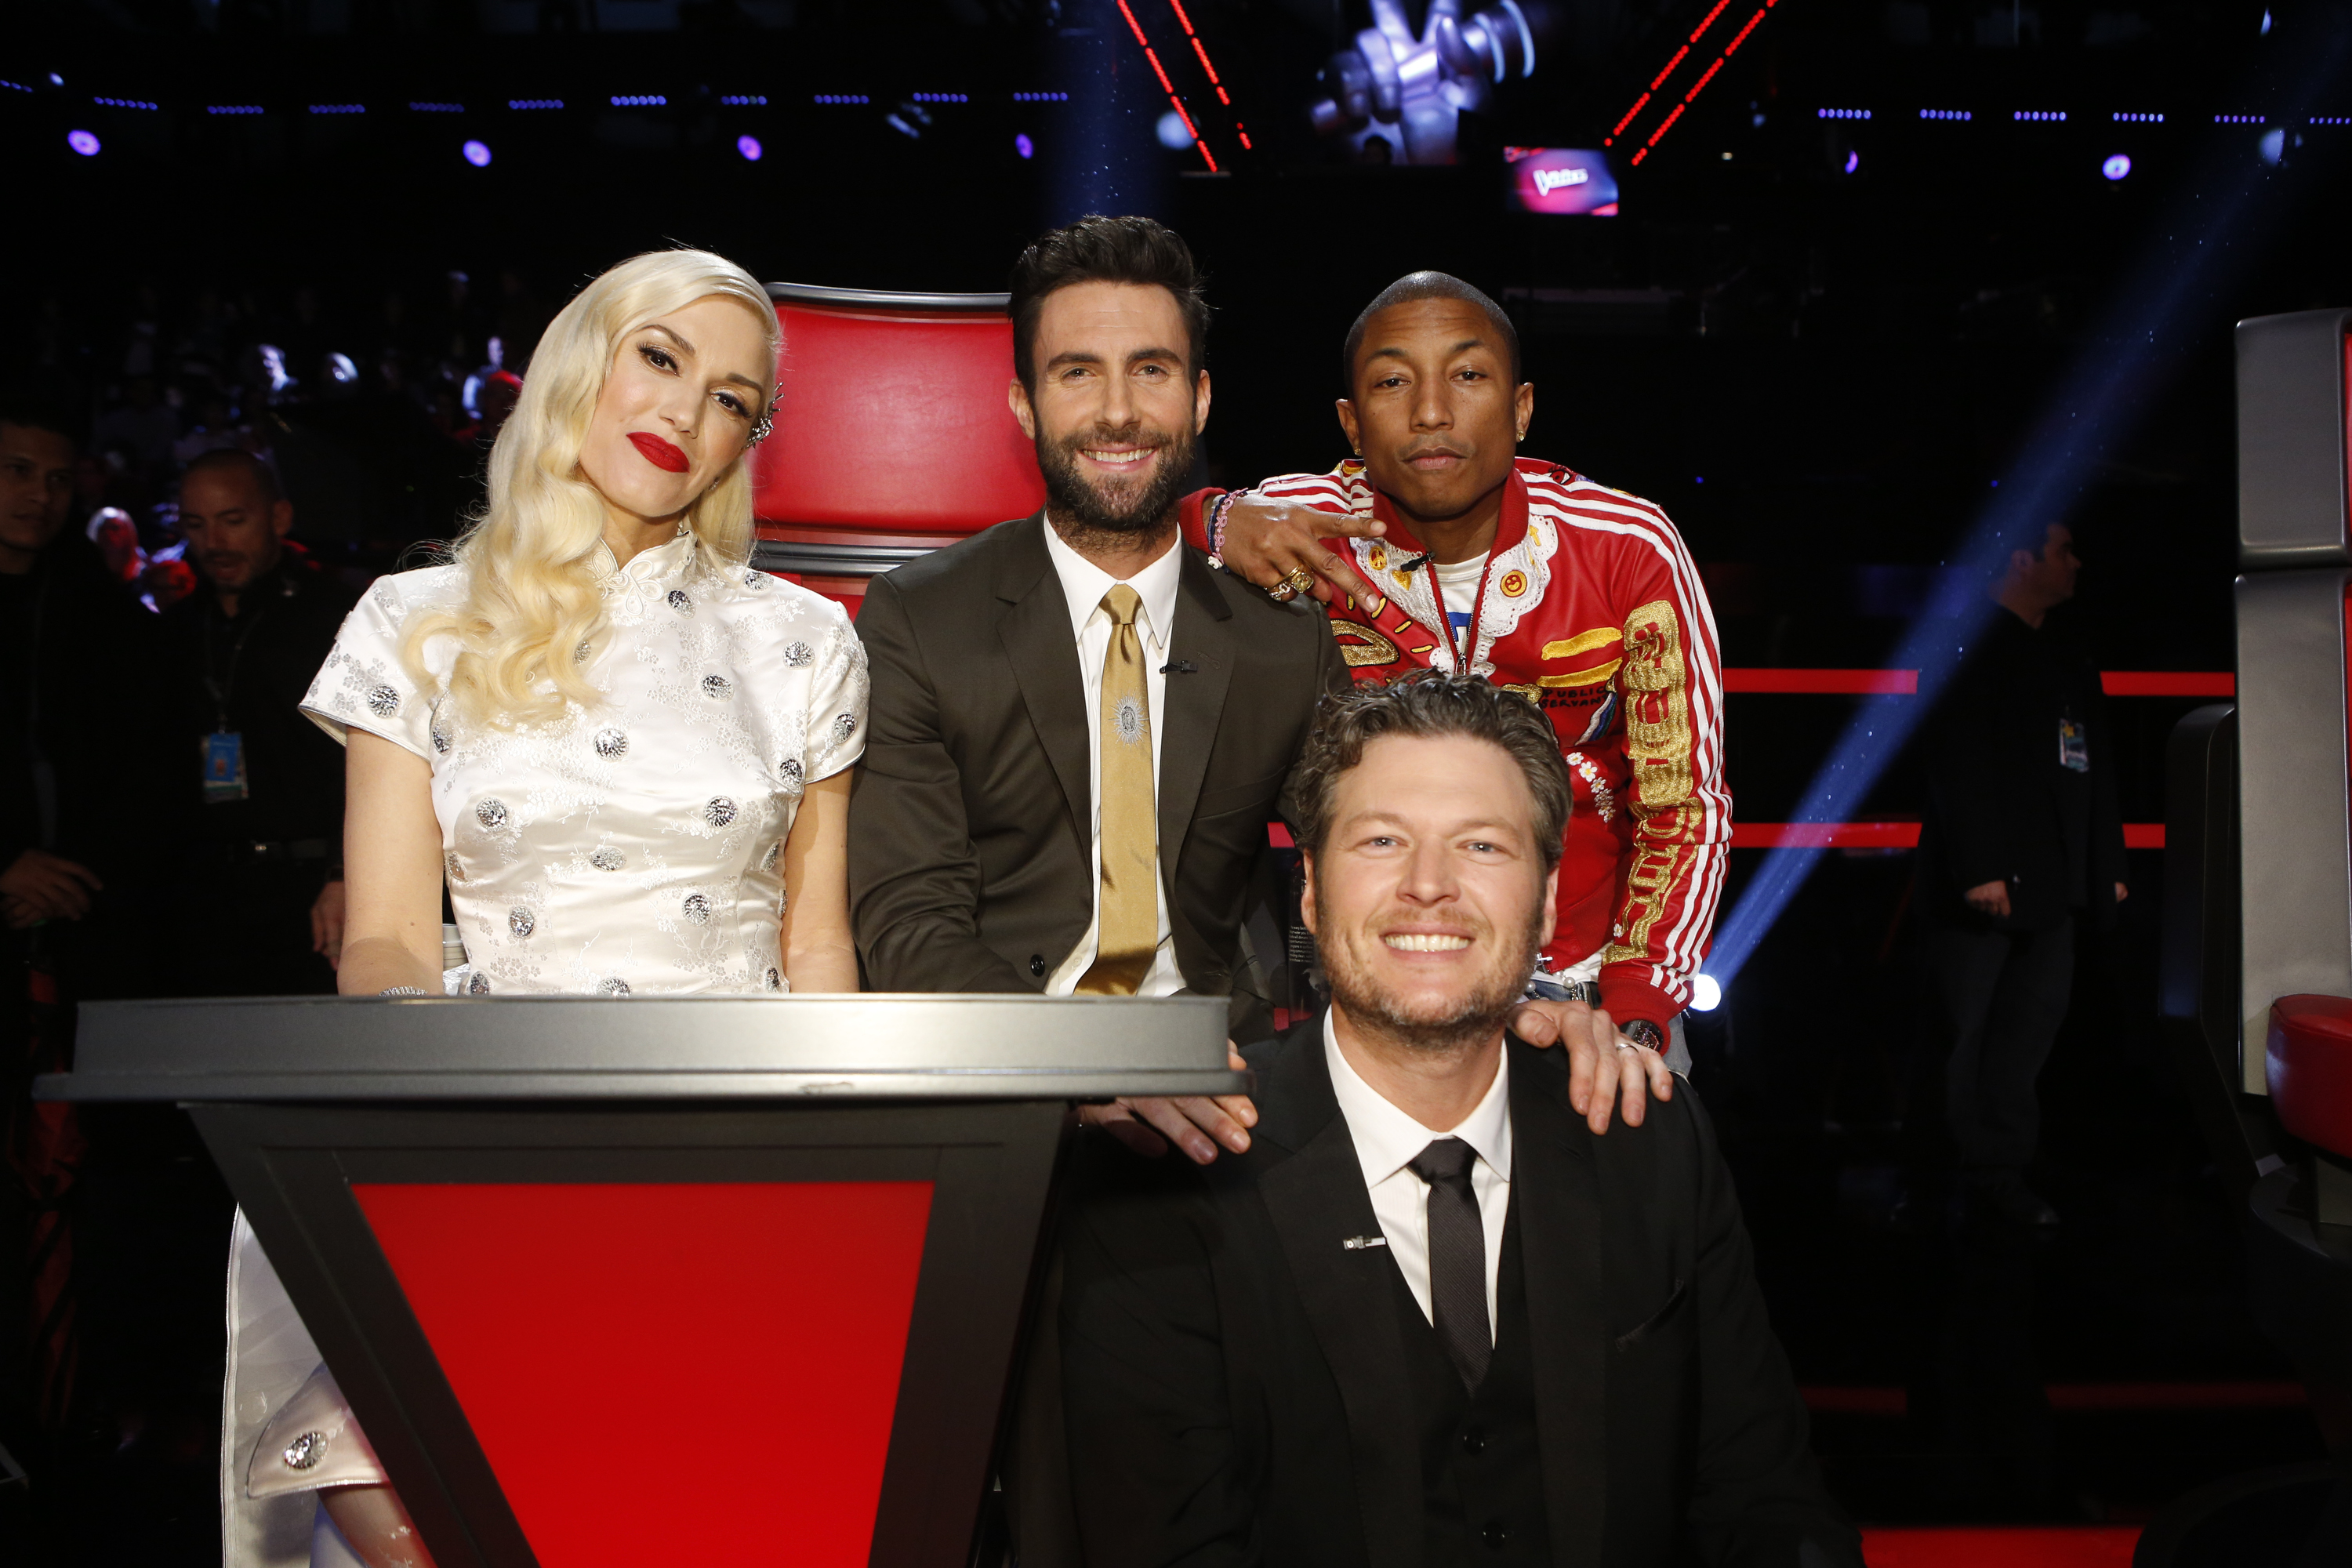 Gwen Stefani, Adam Levine, Pharrell Williams y Blake Shelton en el plató de "The Voice" el 16 de diciembre de 2014 | Fuente: Getty Images